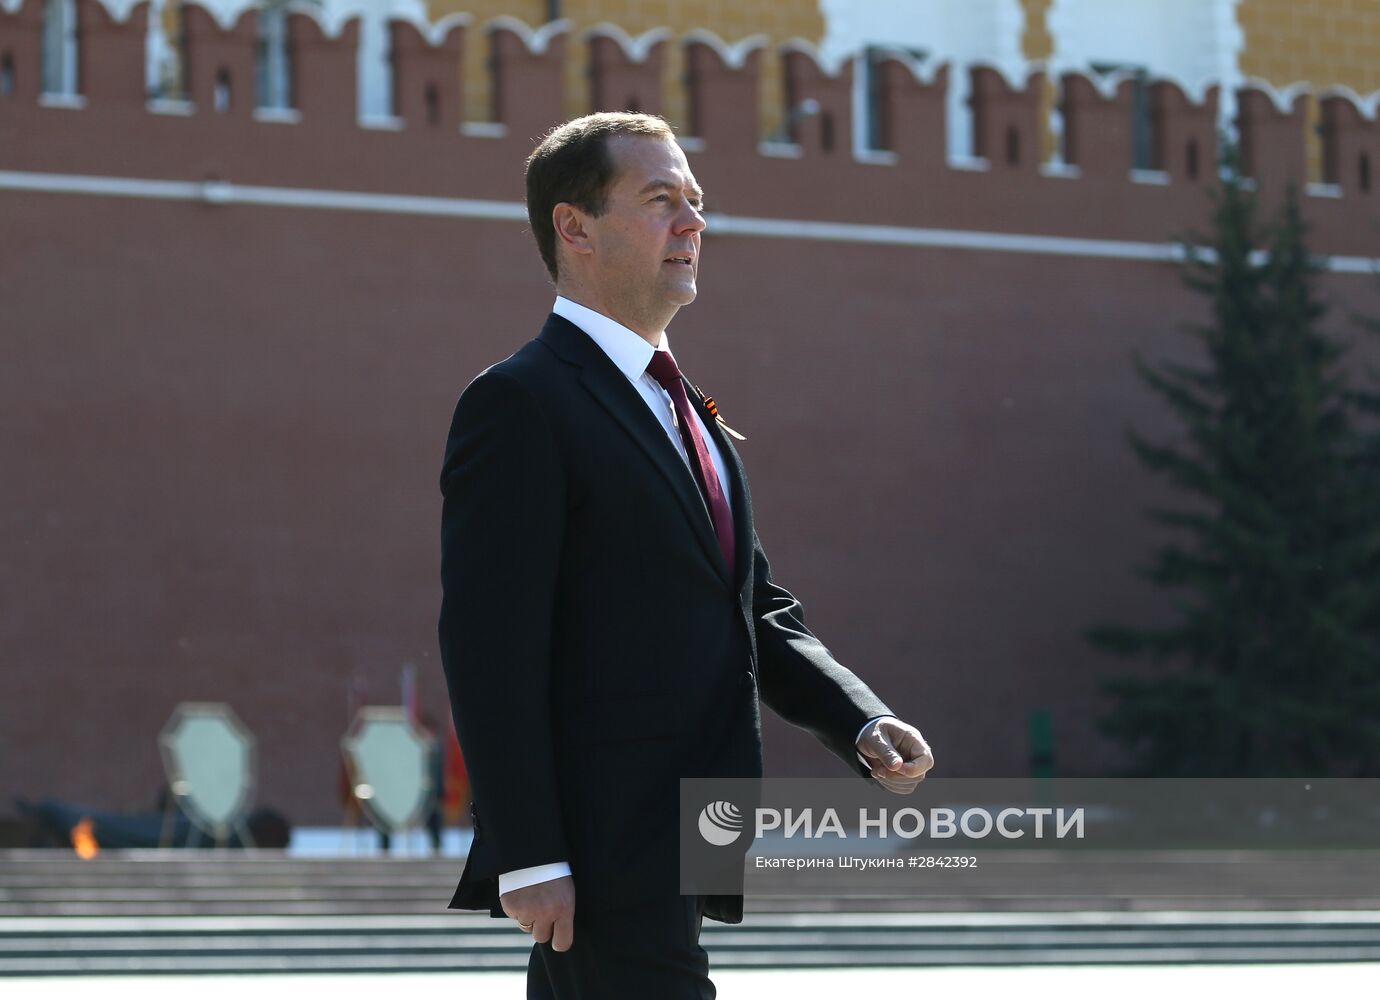 Президент РФ В. Путин и премьер-министр РФ Д. Медведев на военном параде в честь 71-й годовщины Победы в ВОВ